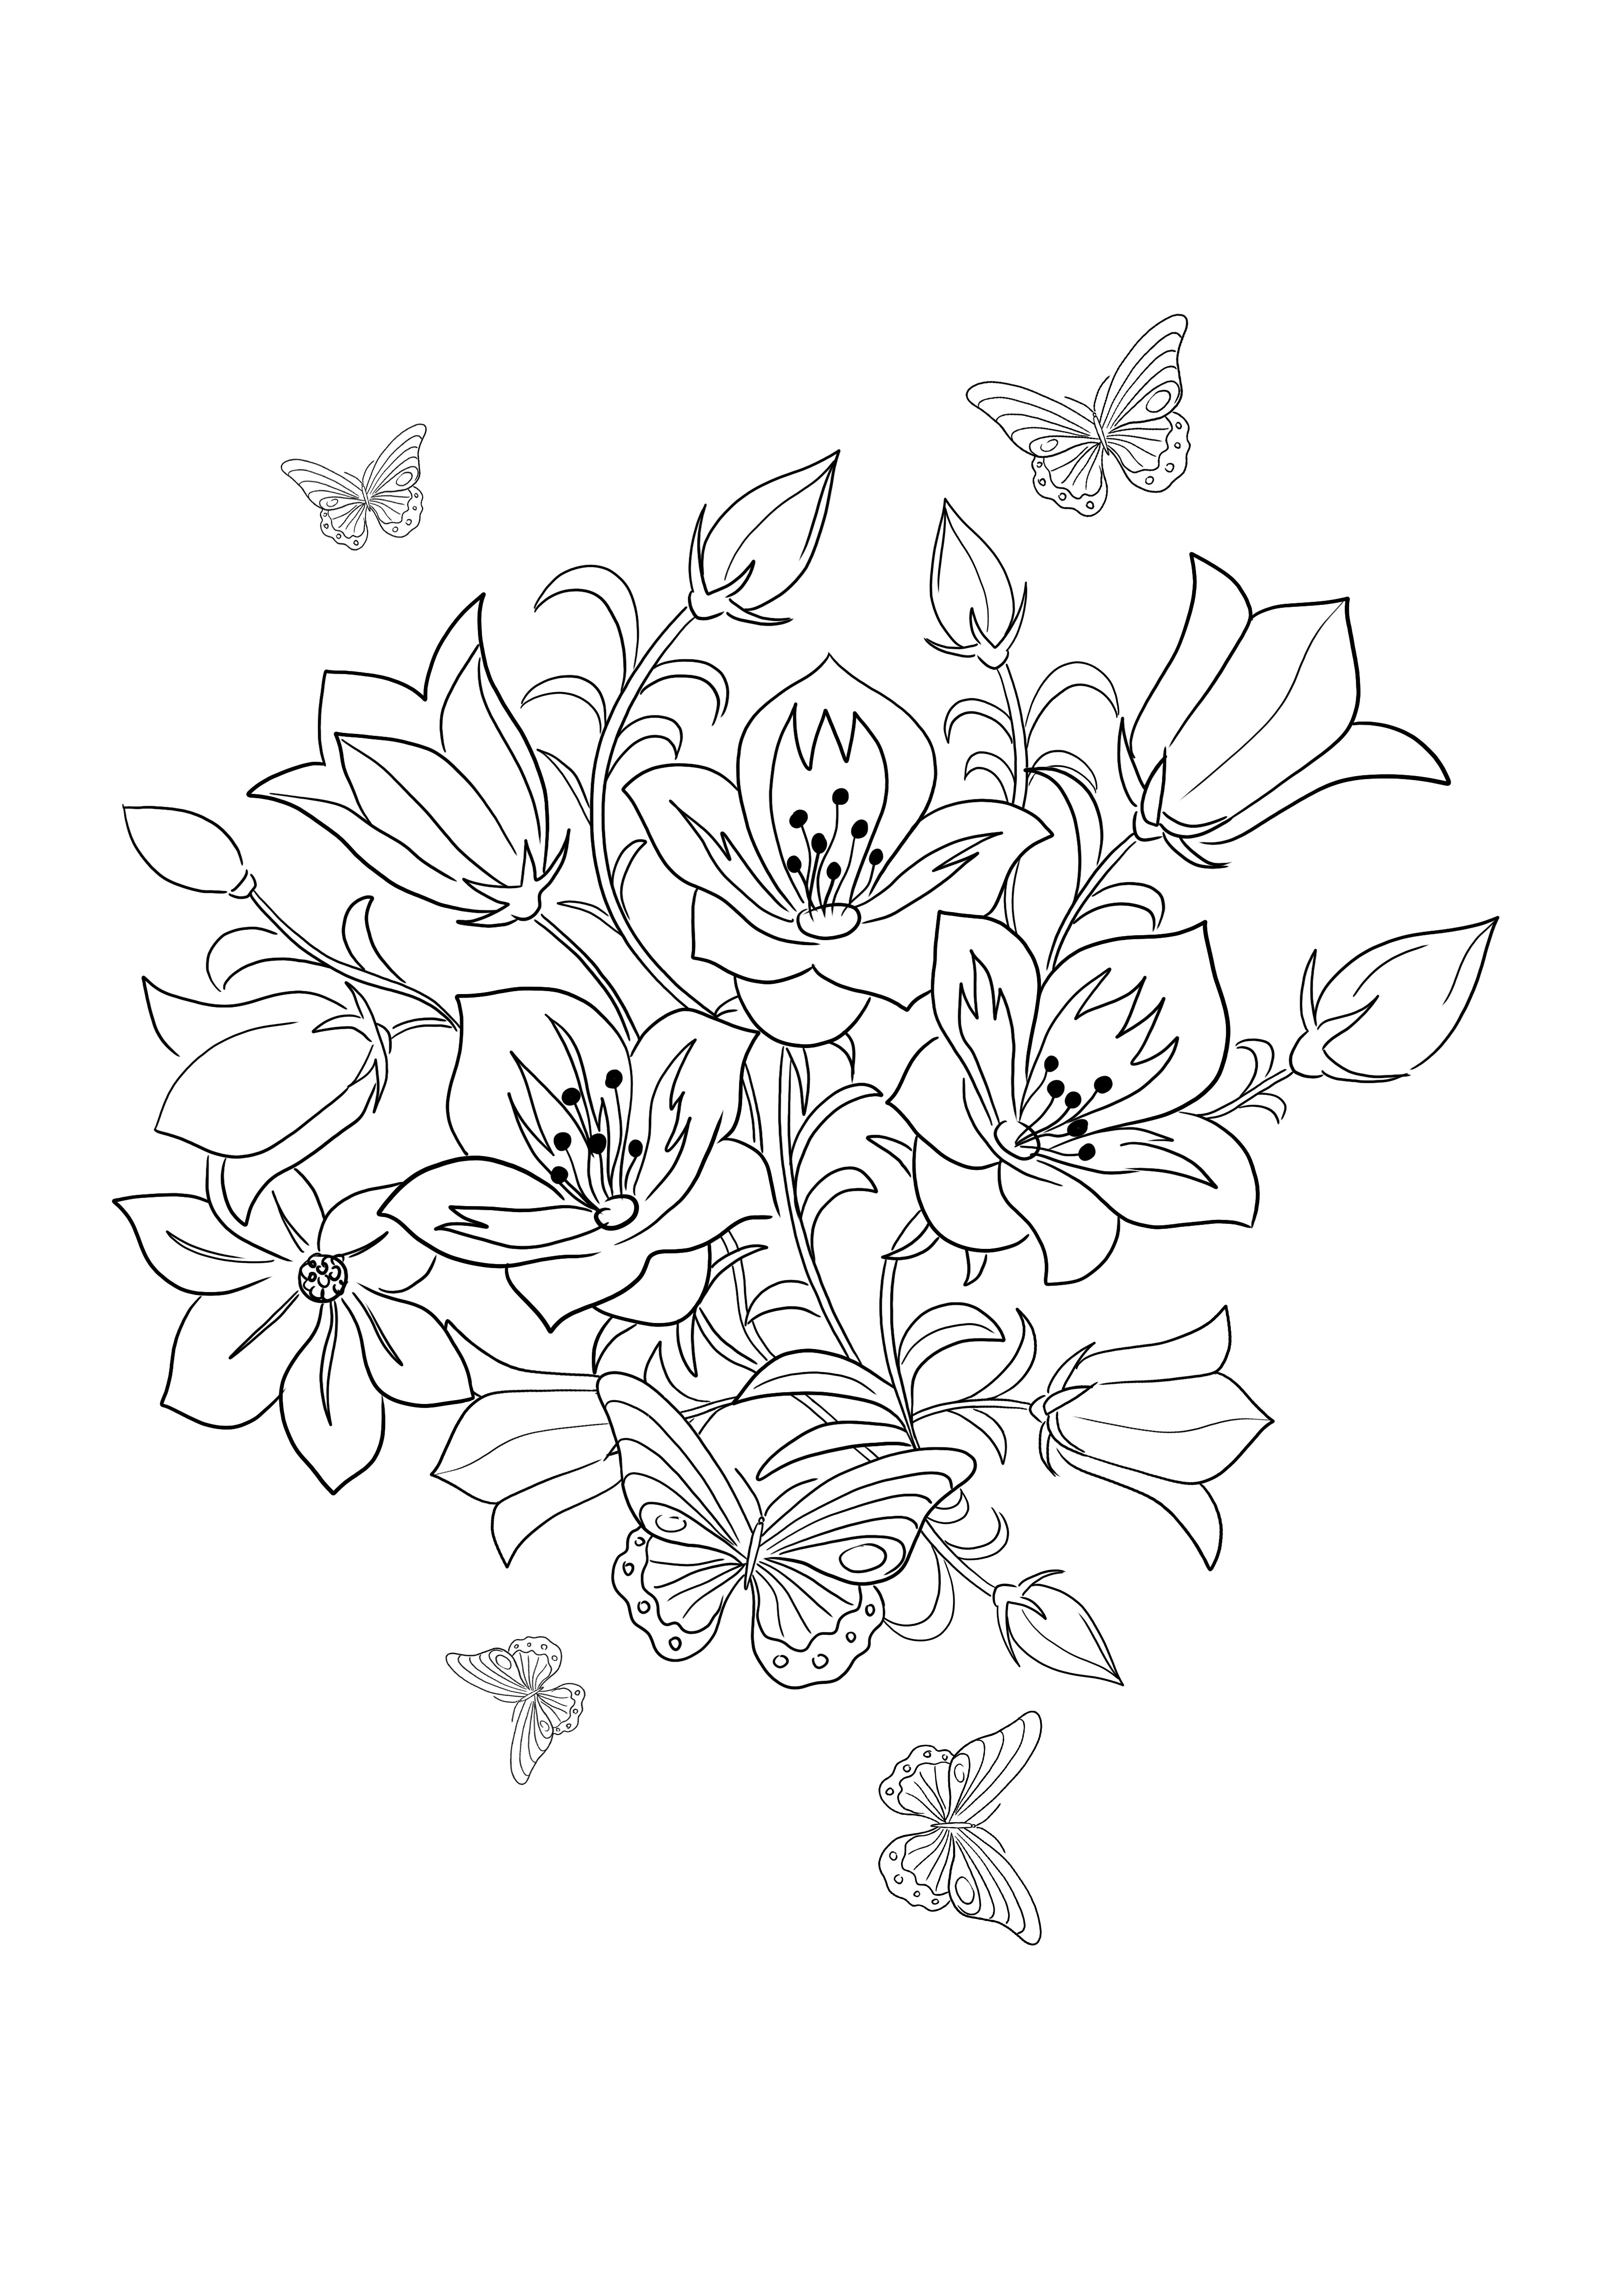 La page de coloriage facile et simple Skylark and Flowers est prête à être utilisée